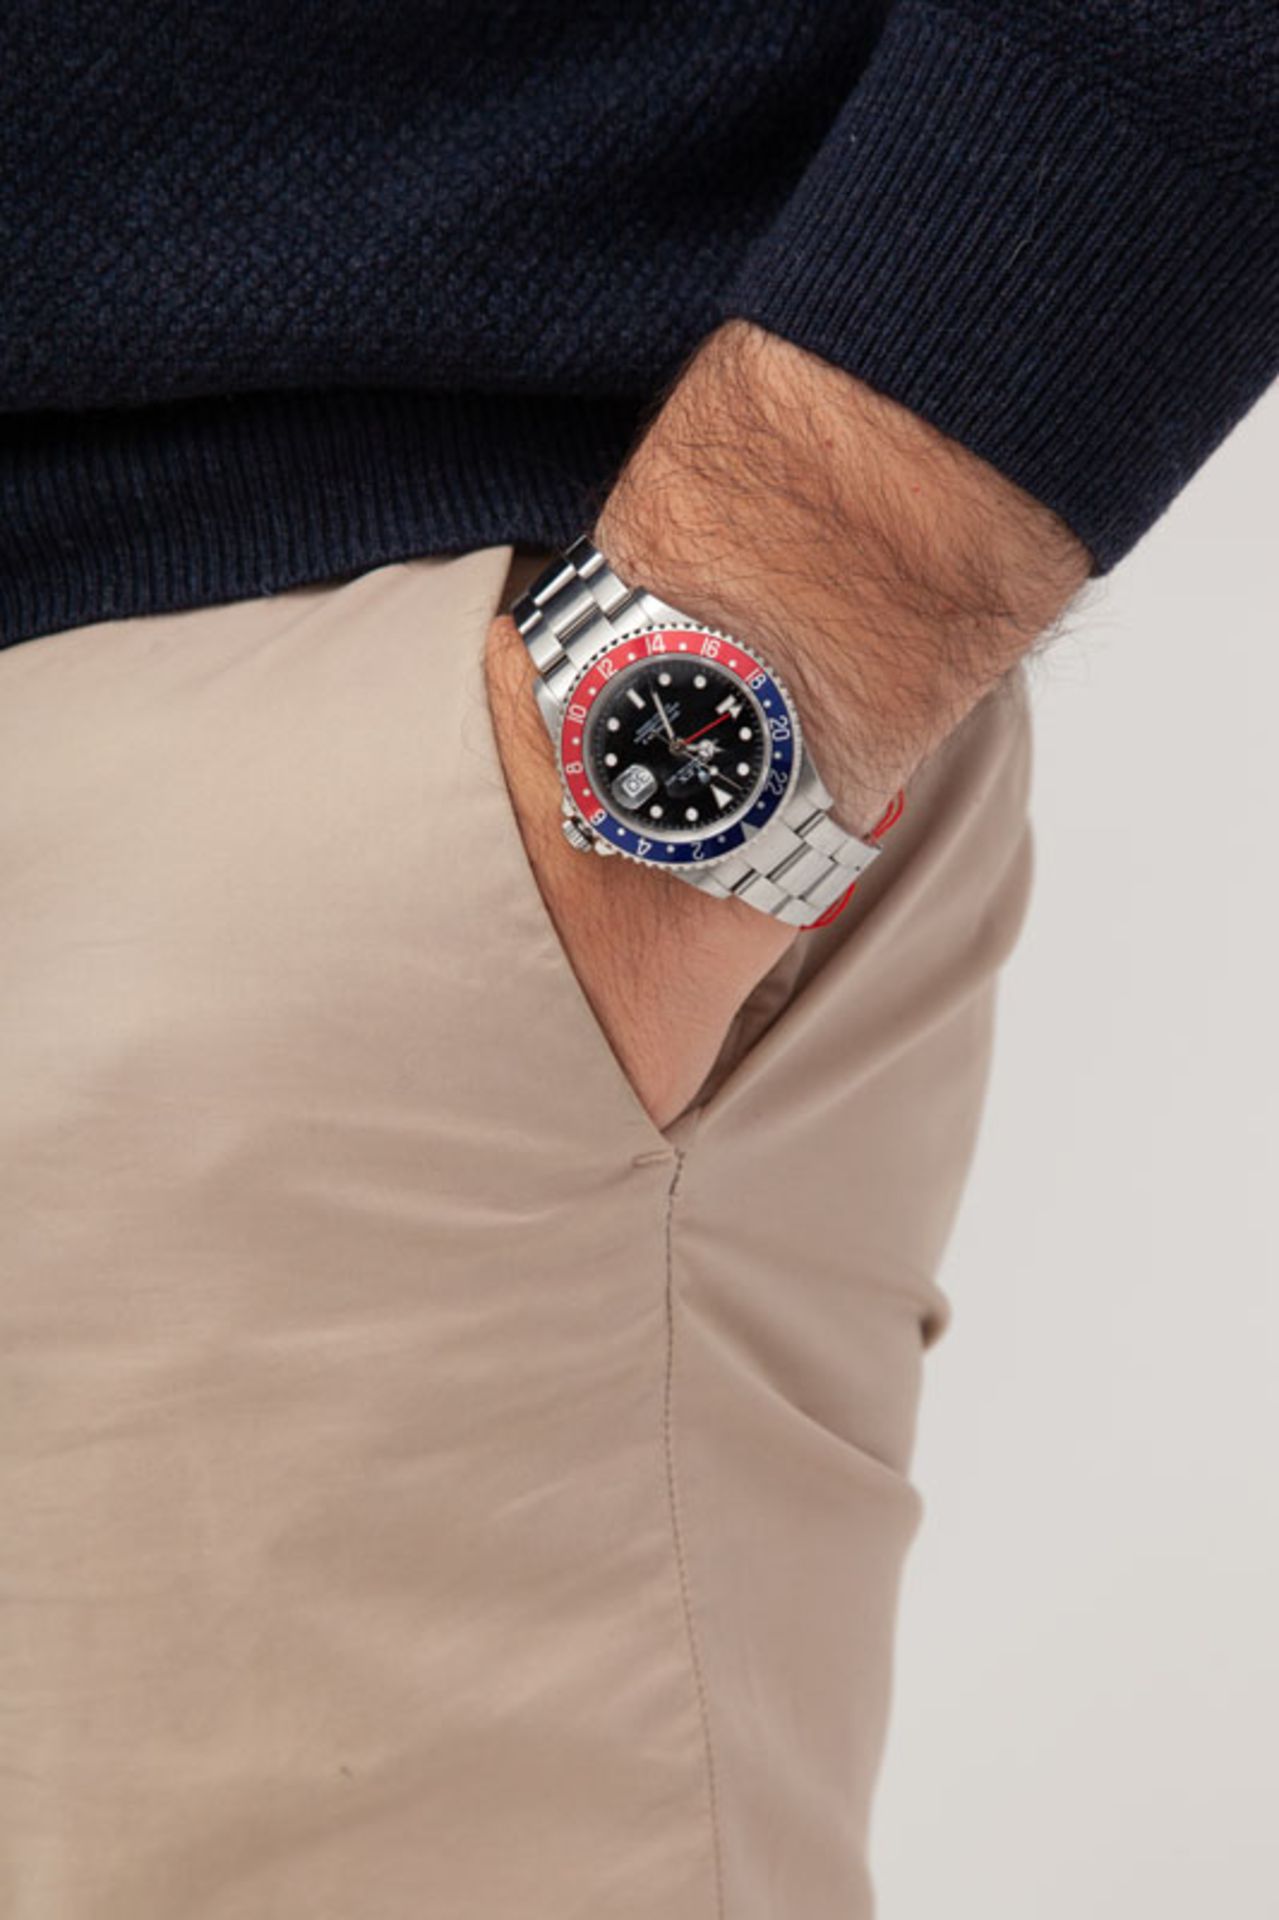 Rolex, GMT Master II, réf. 16710/2180, montre-bracelet en acier avec indication de la date, garantie - Image 5 of 5